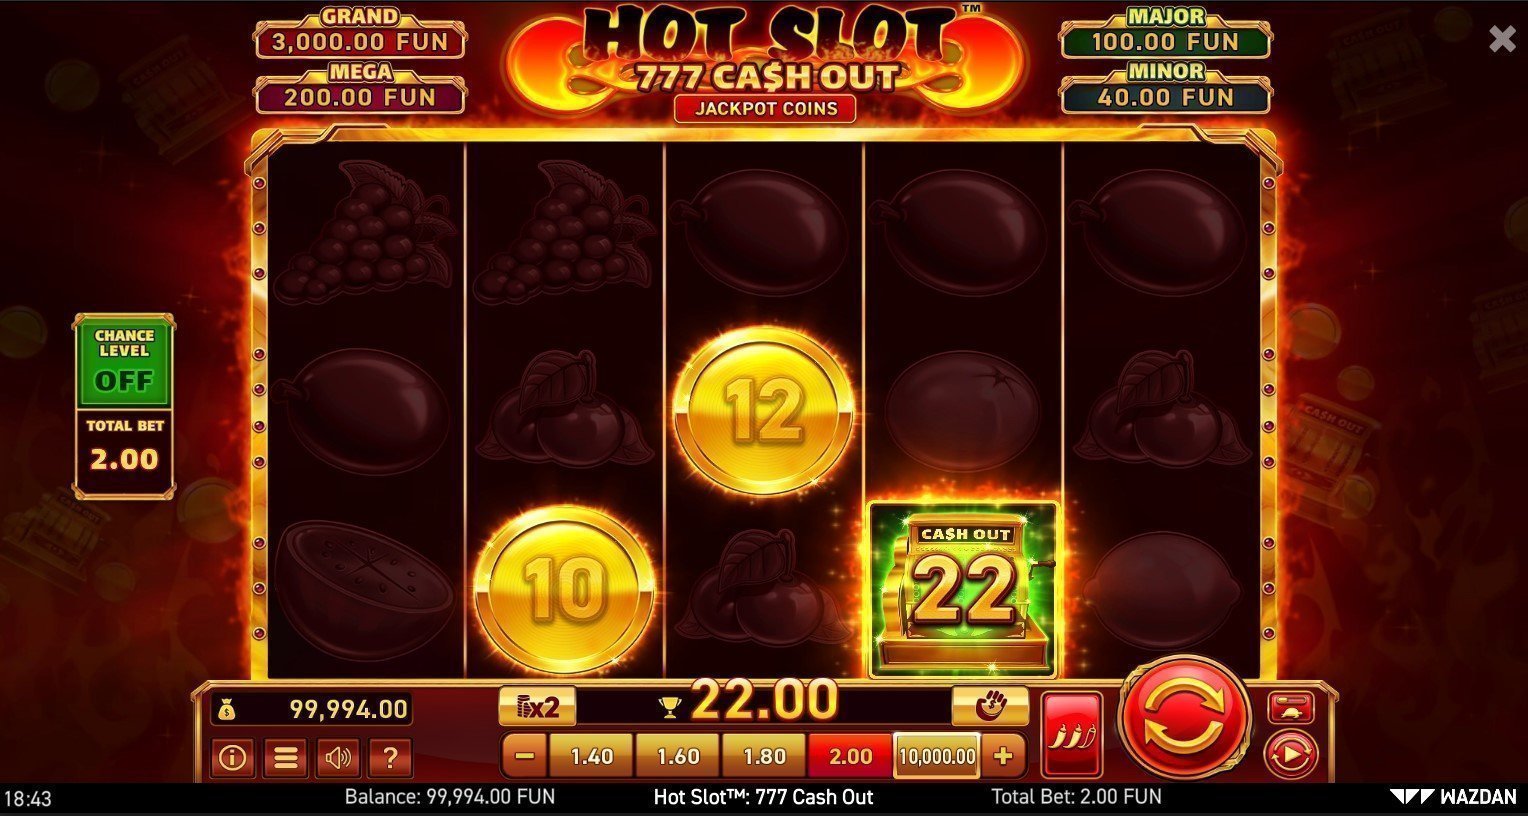 Hot Slot 777 Cash Out